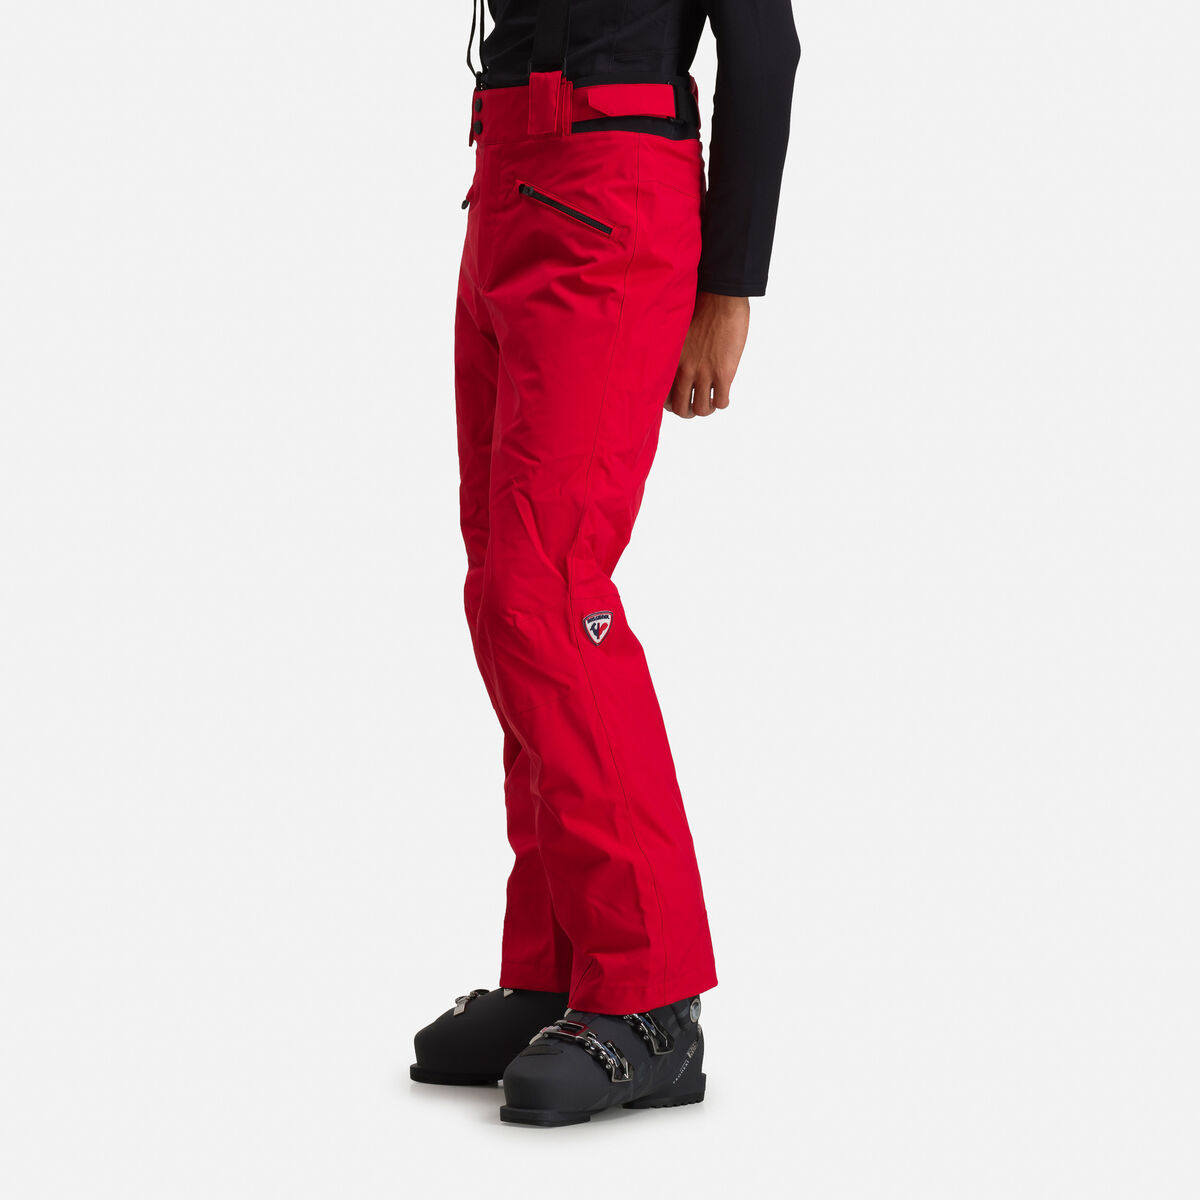 Rossignol Men's Classique Ski Pants red